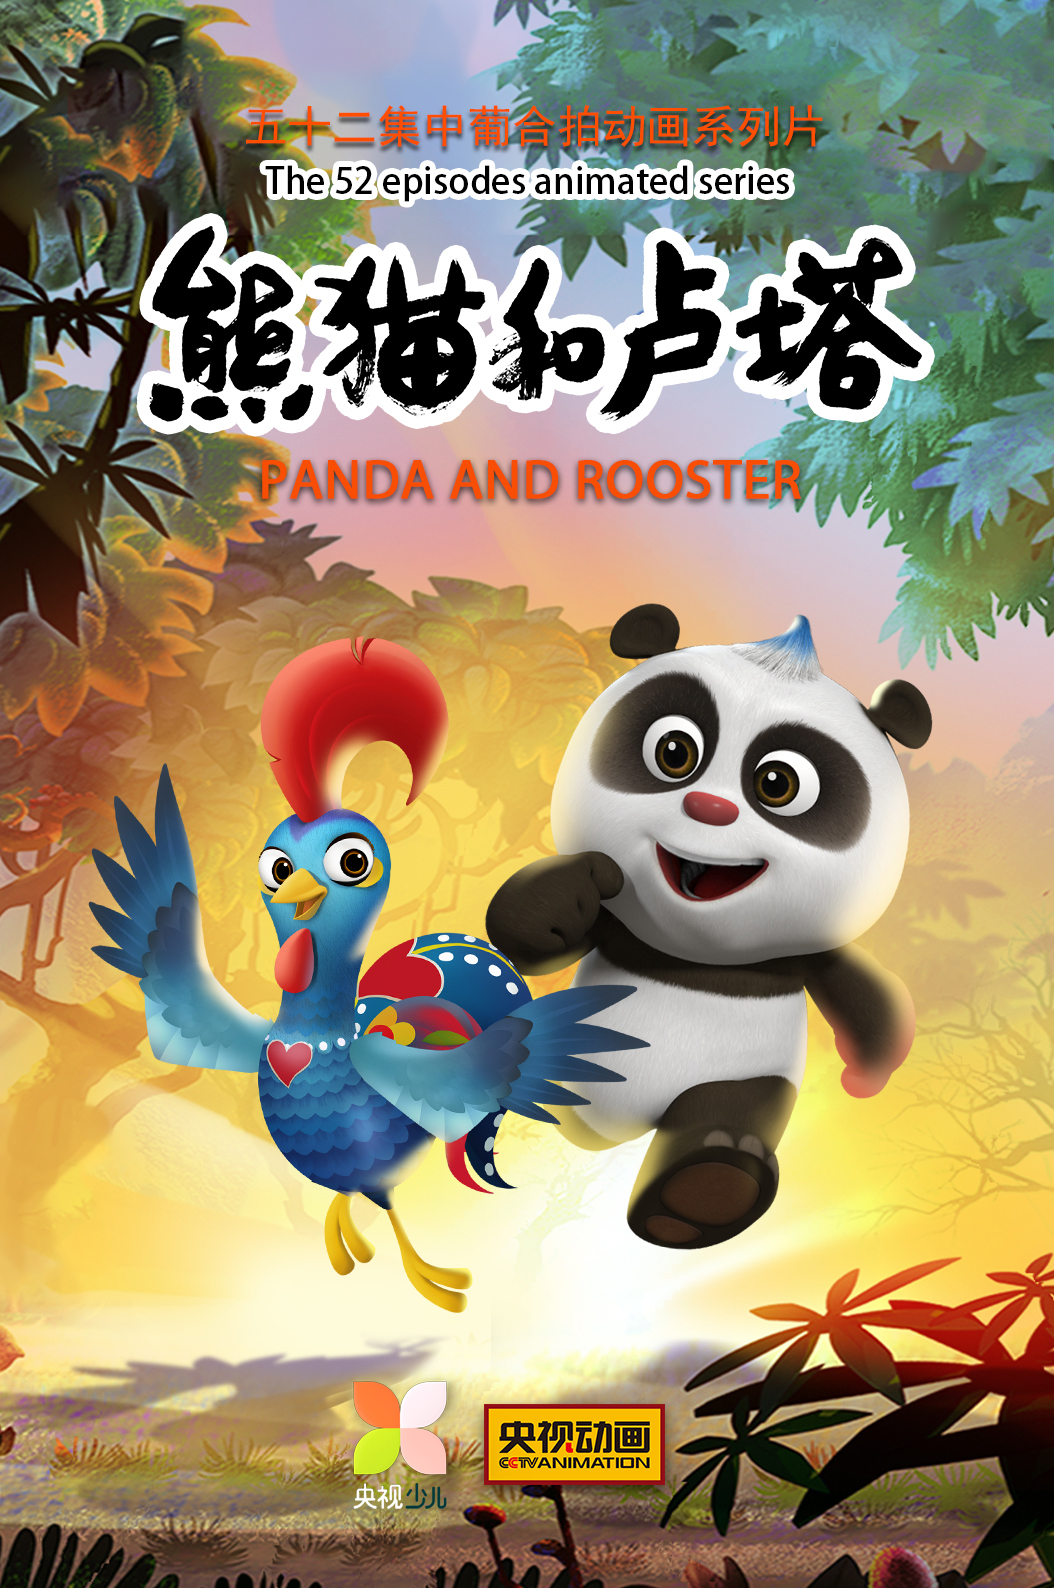 中葡合拍动画系列片《熊猫和卢塔》总台少儿频道12月18日欢乐开播_中国